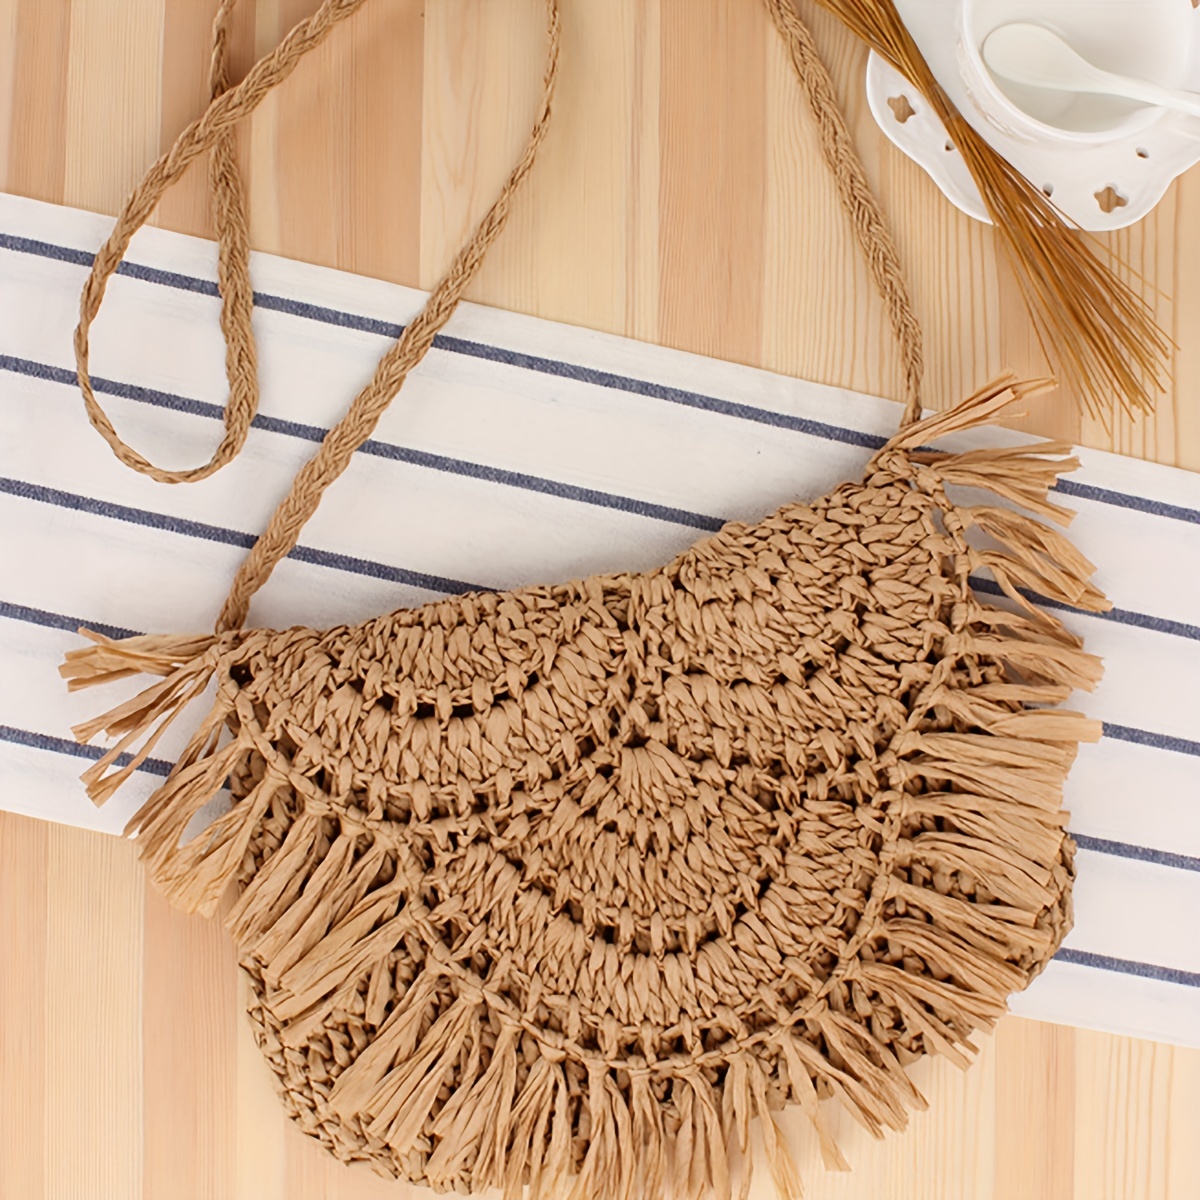 Crochet Tassel Bag